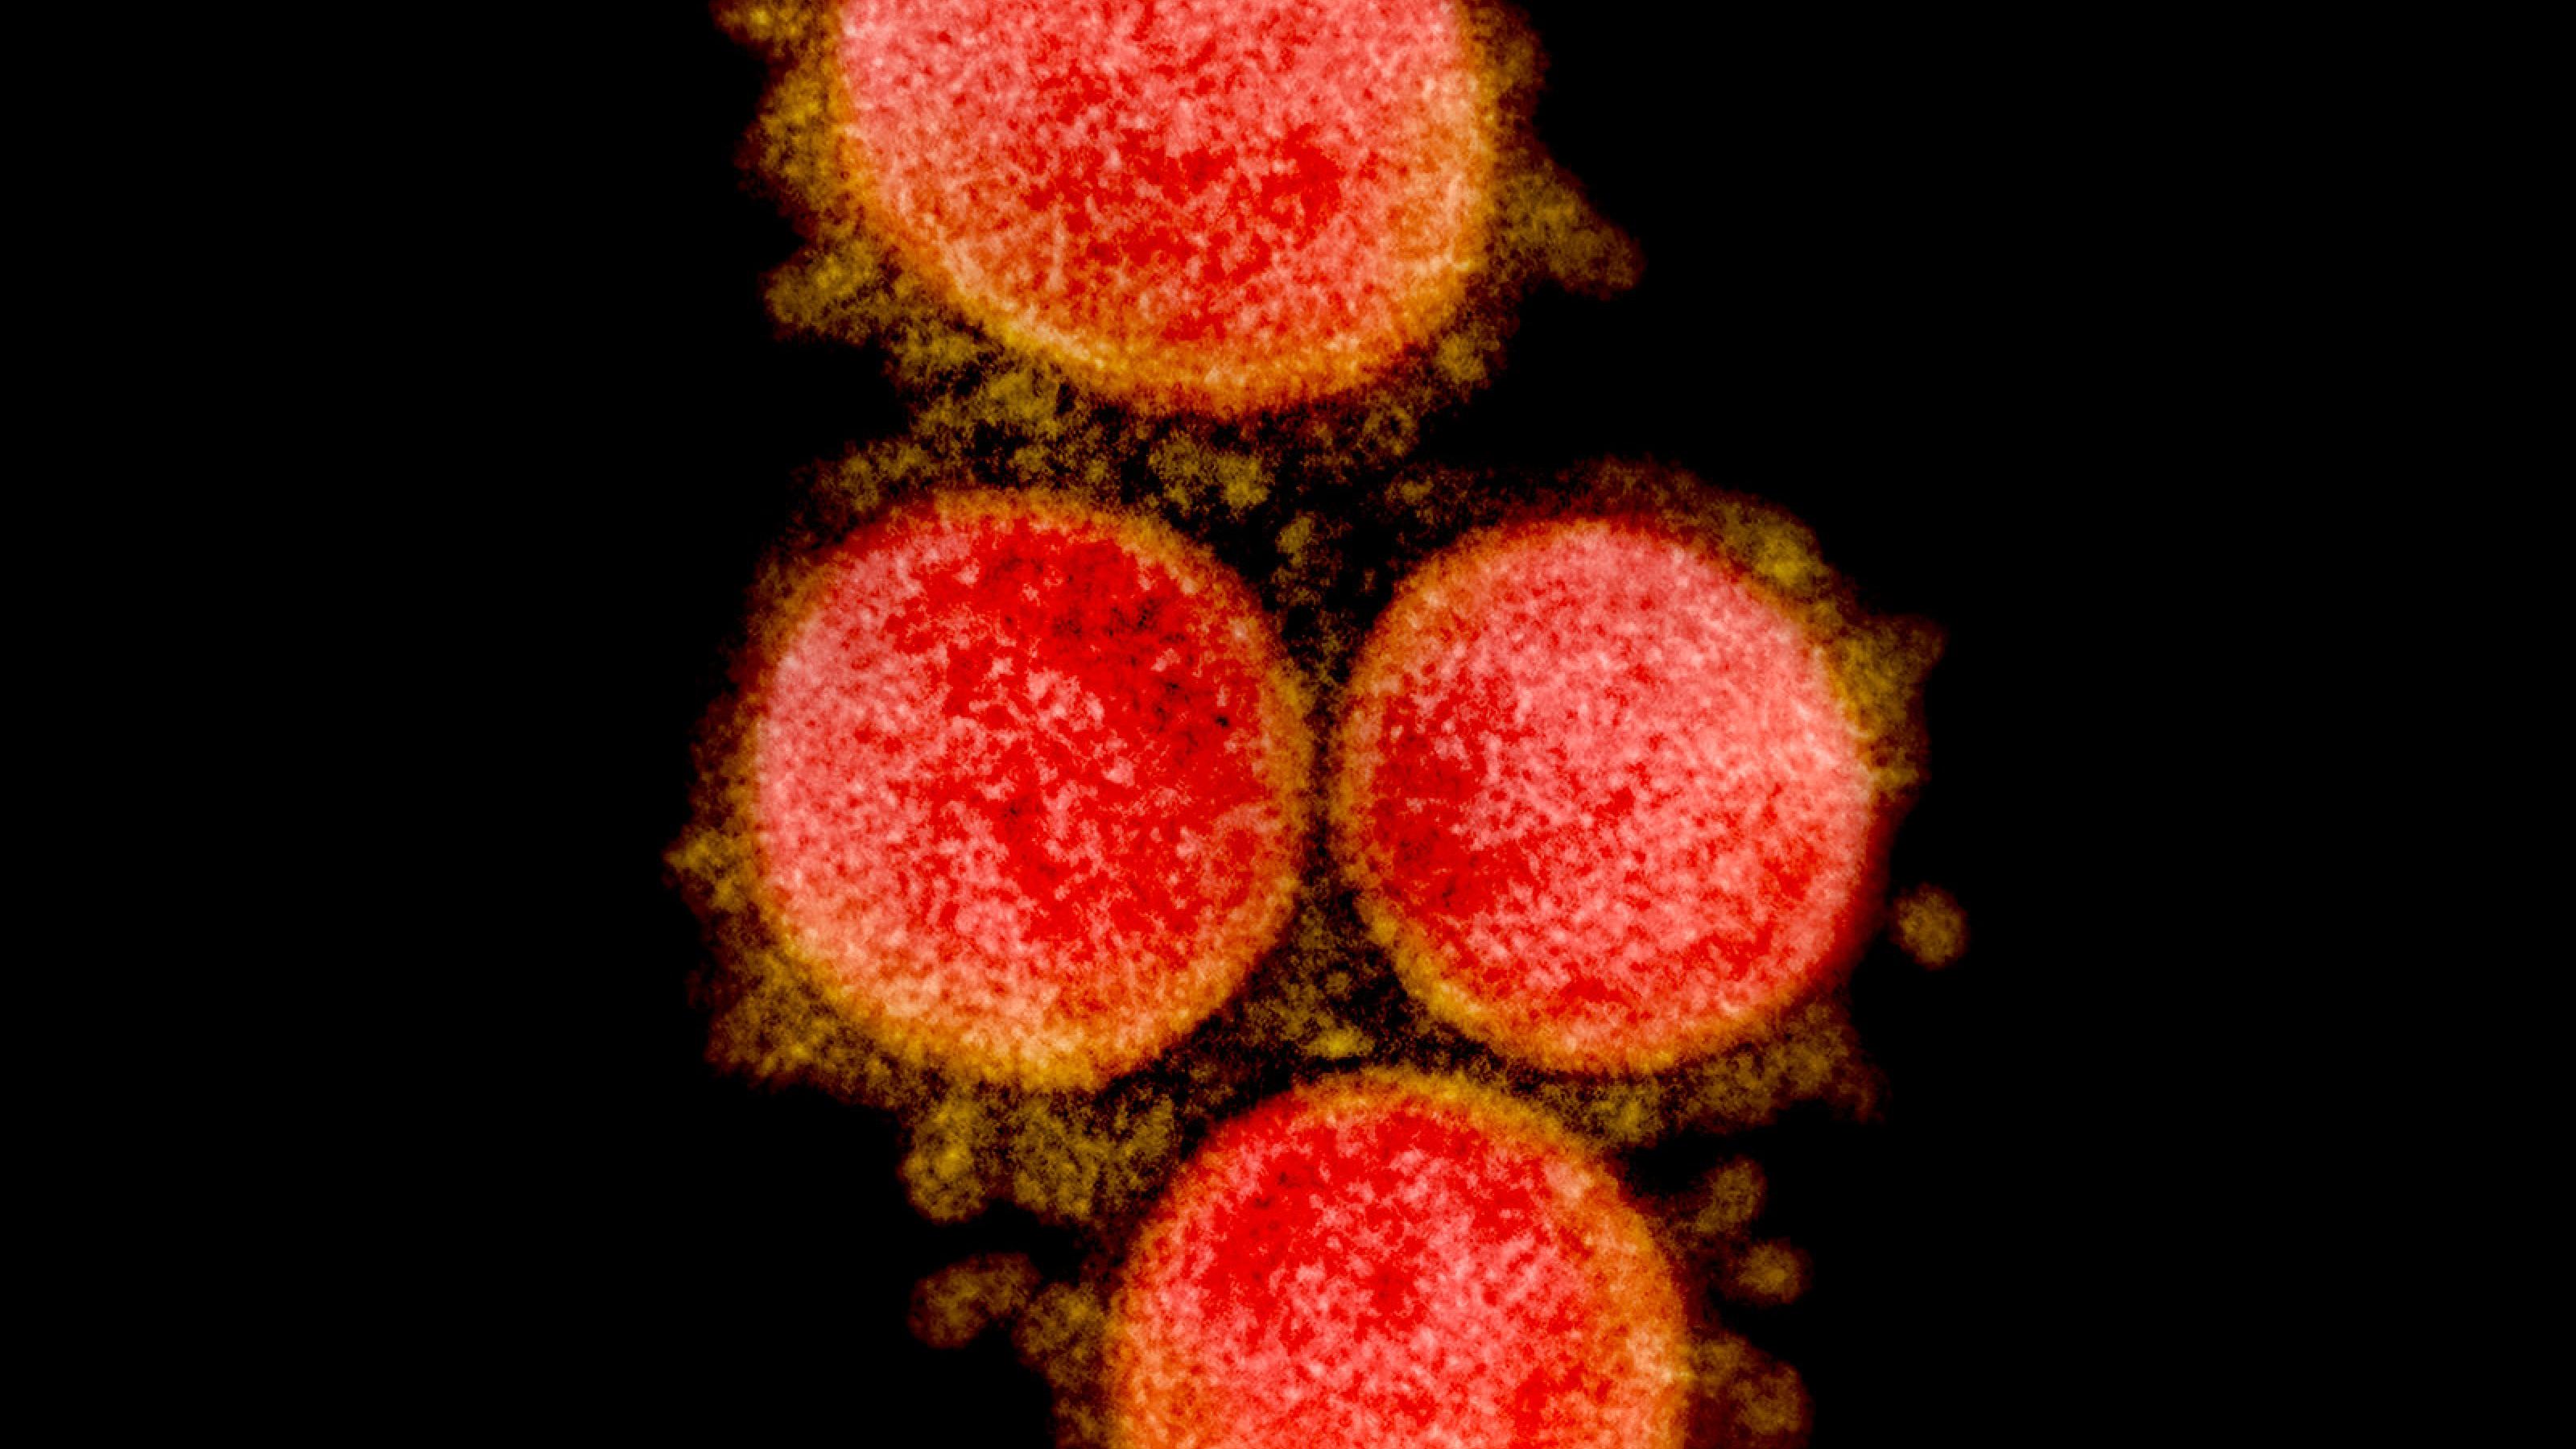 Das Bild zeigt eine elektronenmikroskopische Aufnahme von Sars-CoV-2. Die Viruspartikel sind rot angefärbt.